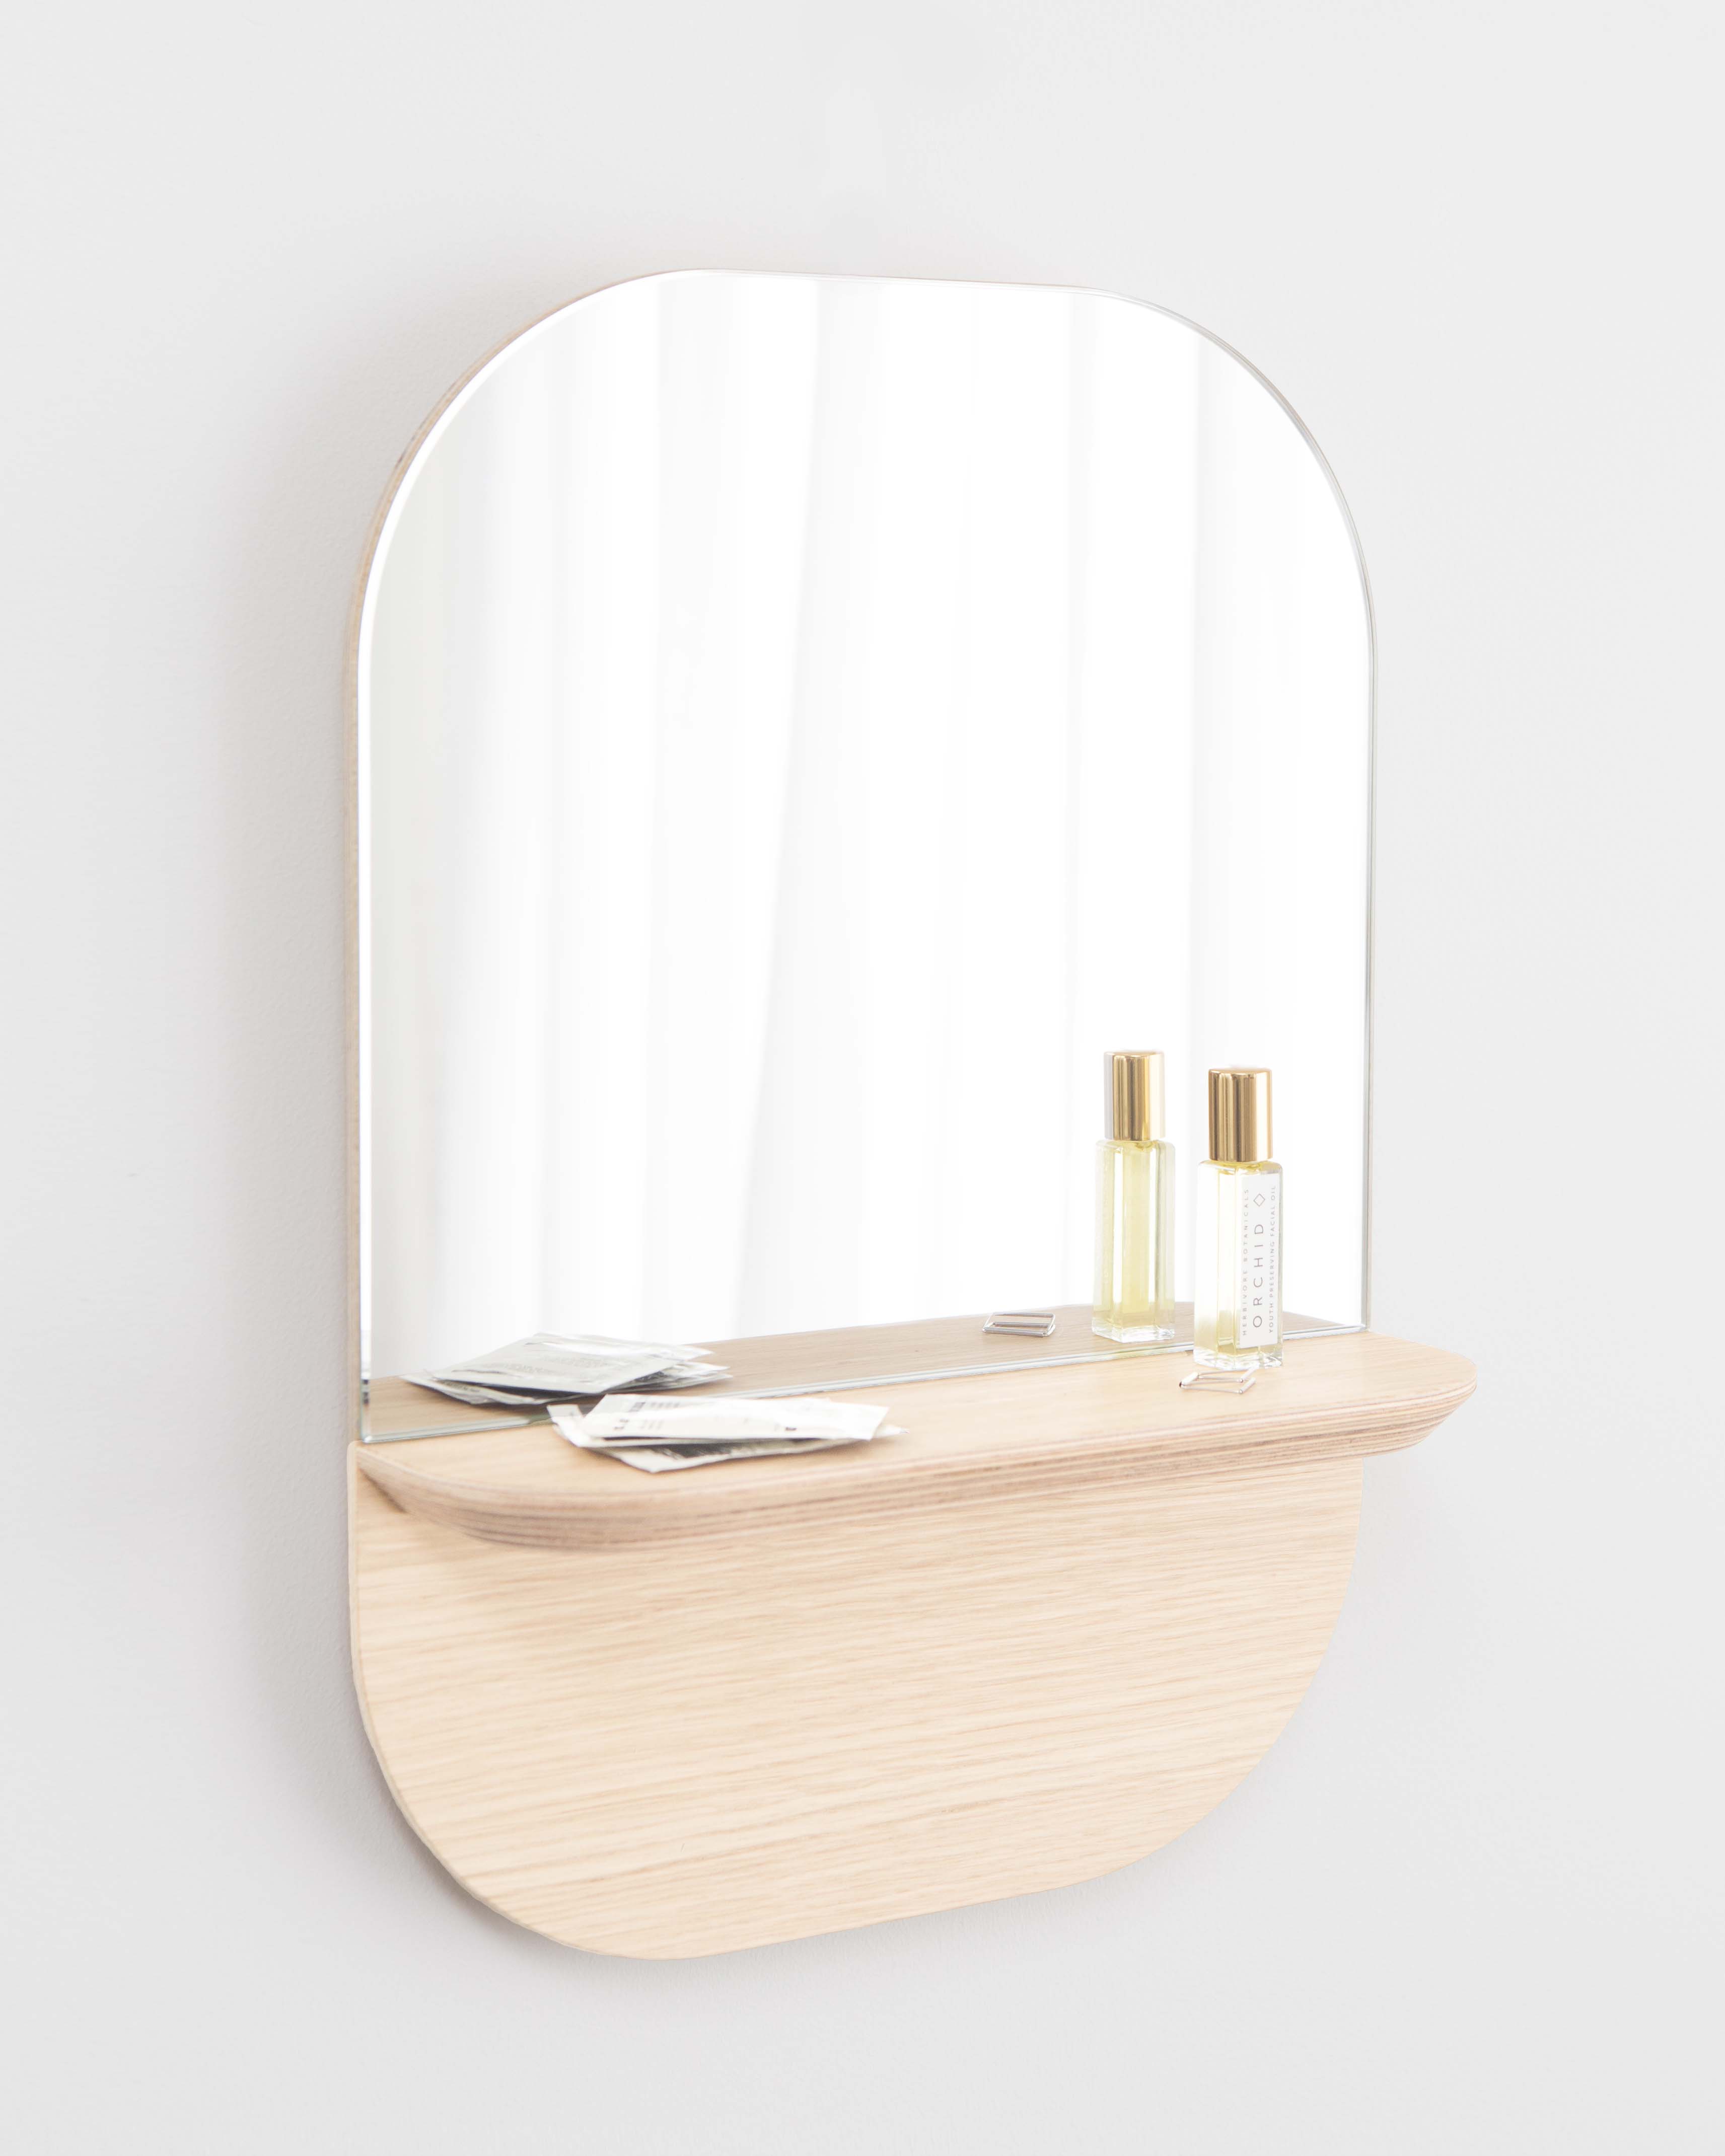 single Conventie Haarvaten Sight (S), een functionele spiegel met plank voor accessoires - Loof